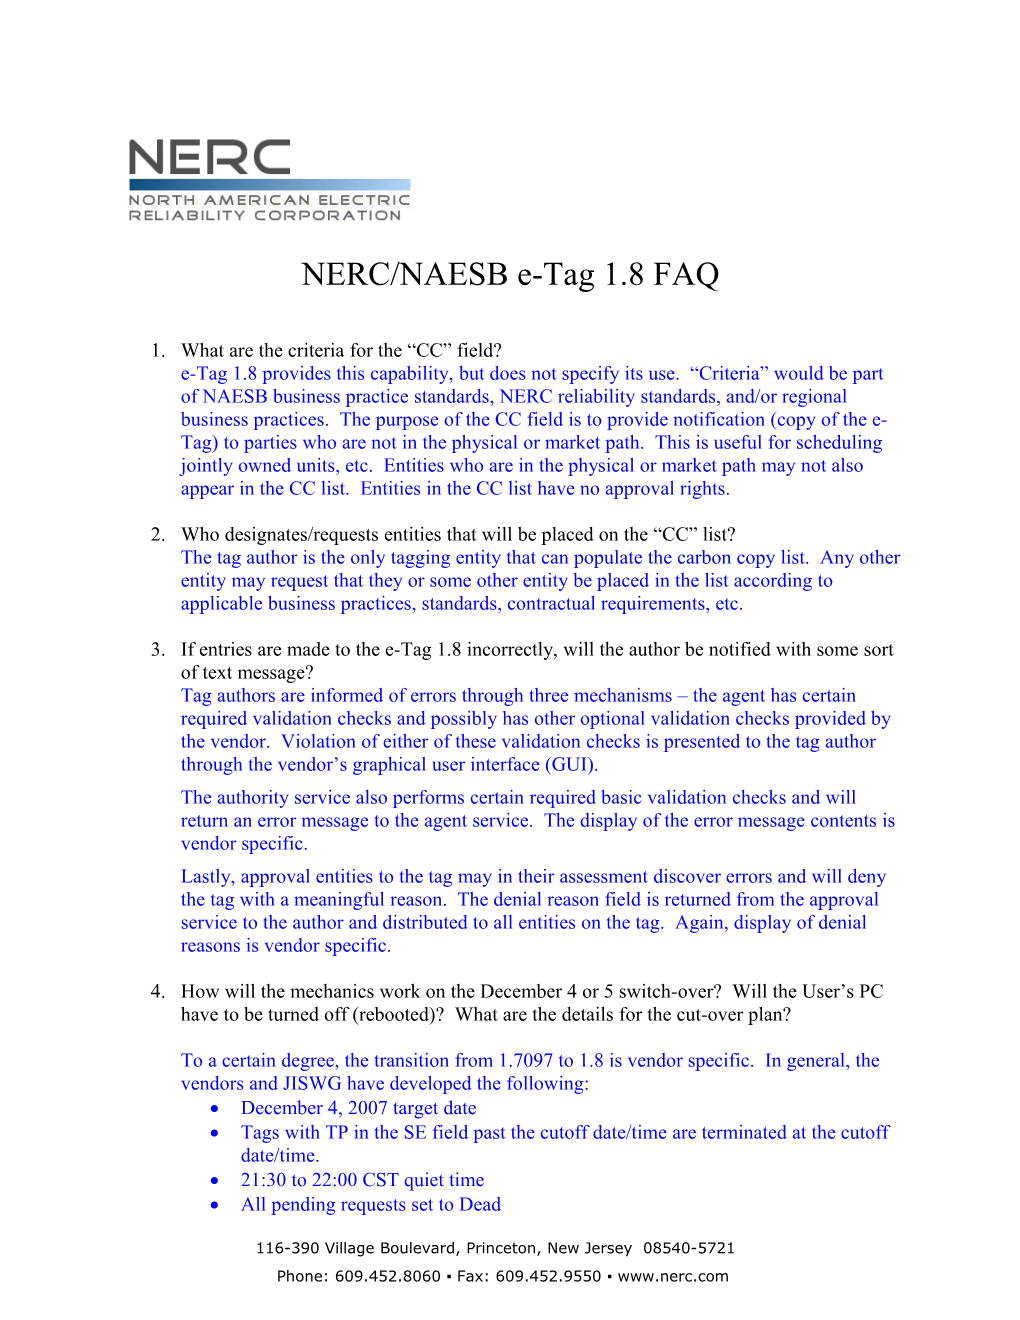 NERC/NAESB E-Tag 1.8 FAQ